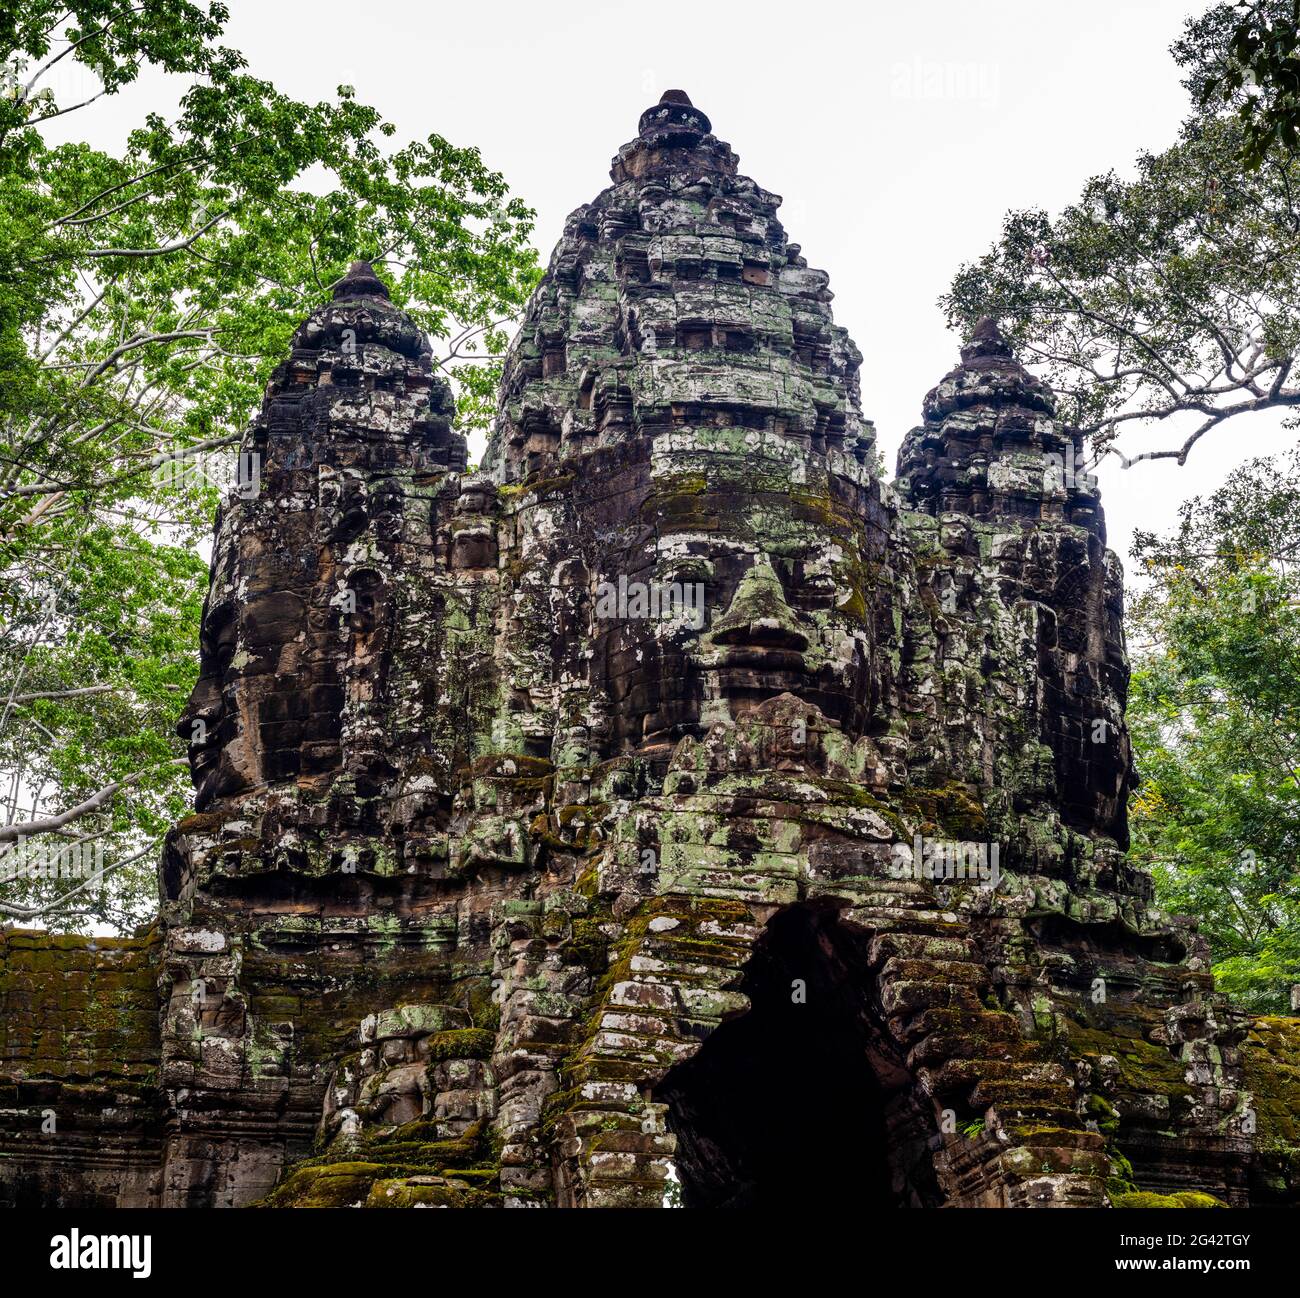 Porte nord de la ruine du temple d'Angkor Thom, Parc archéologique d'Angkor Wat, Siem Reap, Cambodge Banque D'Images